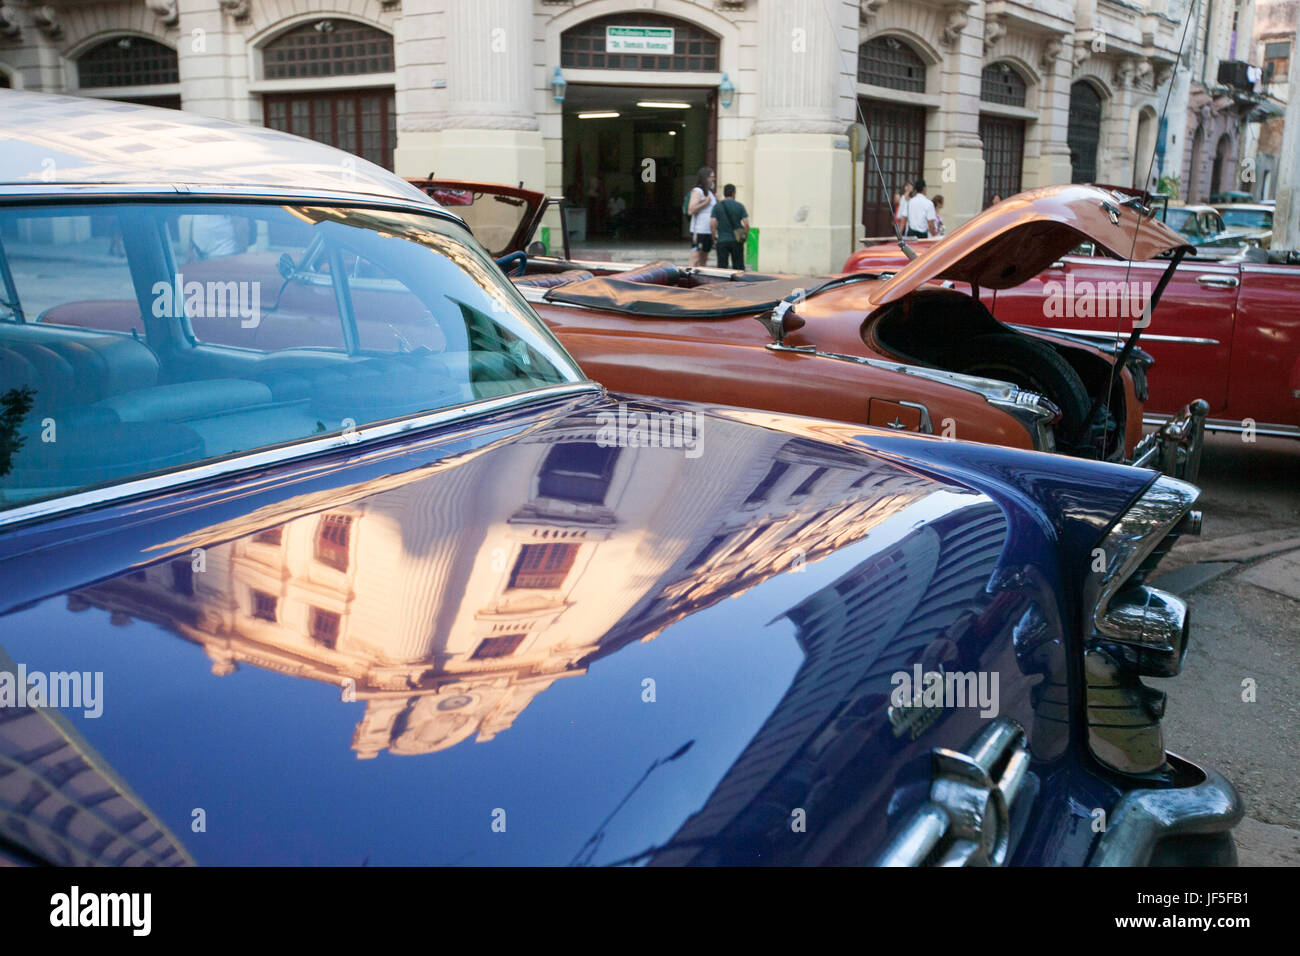 L'architecture cubaine au centre-ville de La Havane est réfléchie sur le coffre d'une voiture américaine classique. Banque D'Images